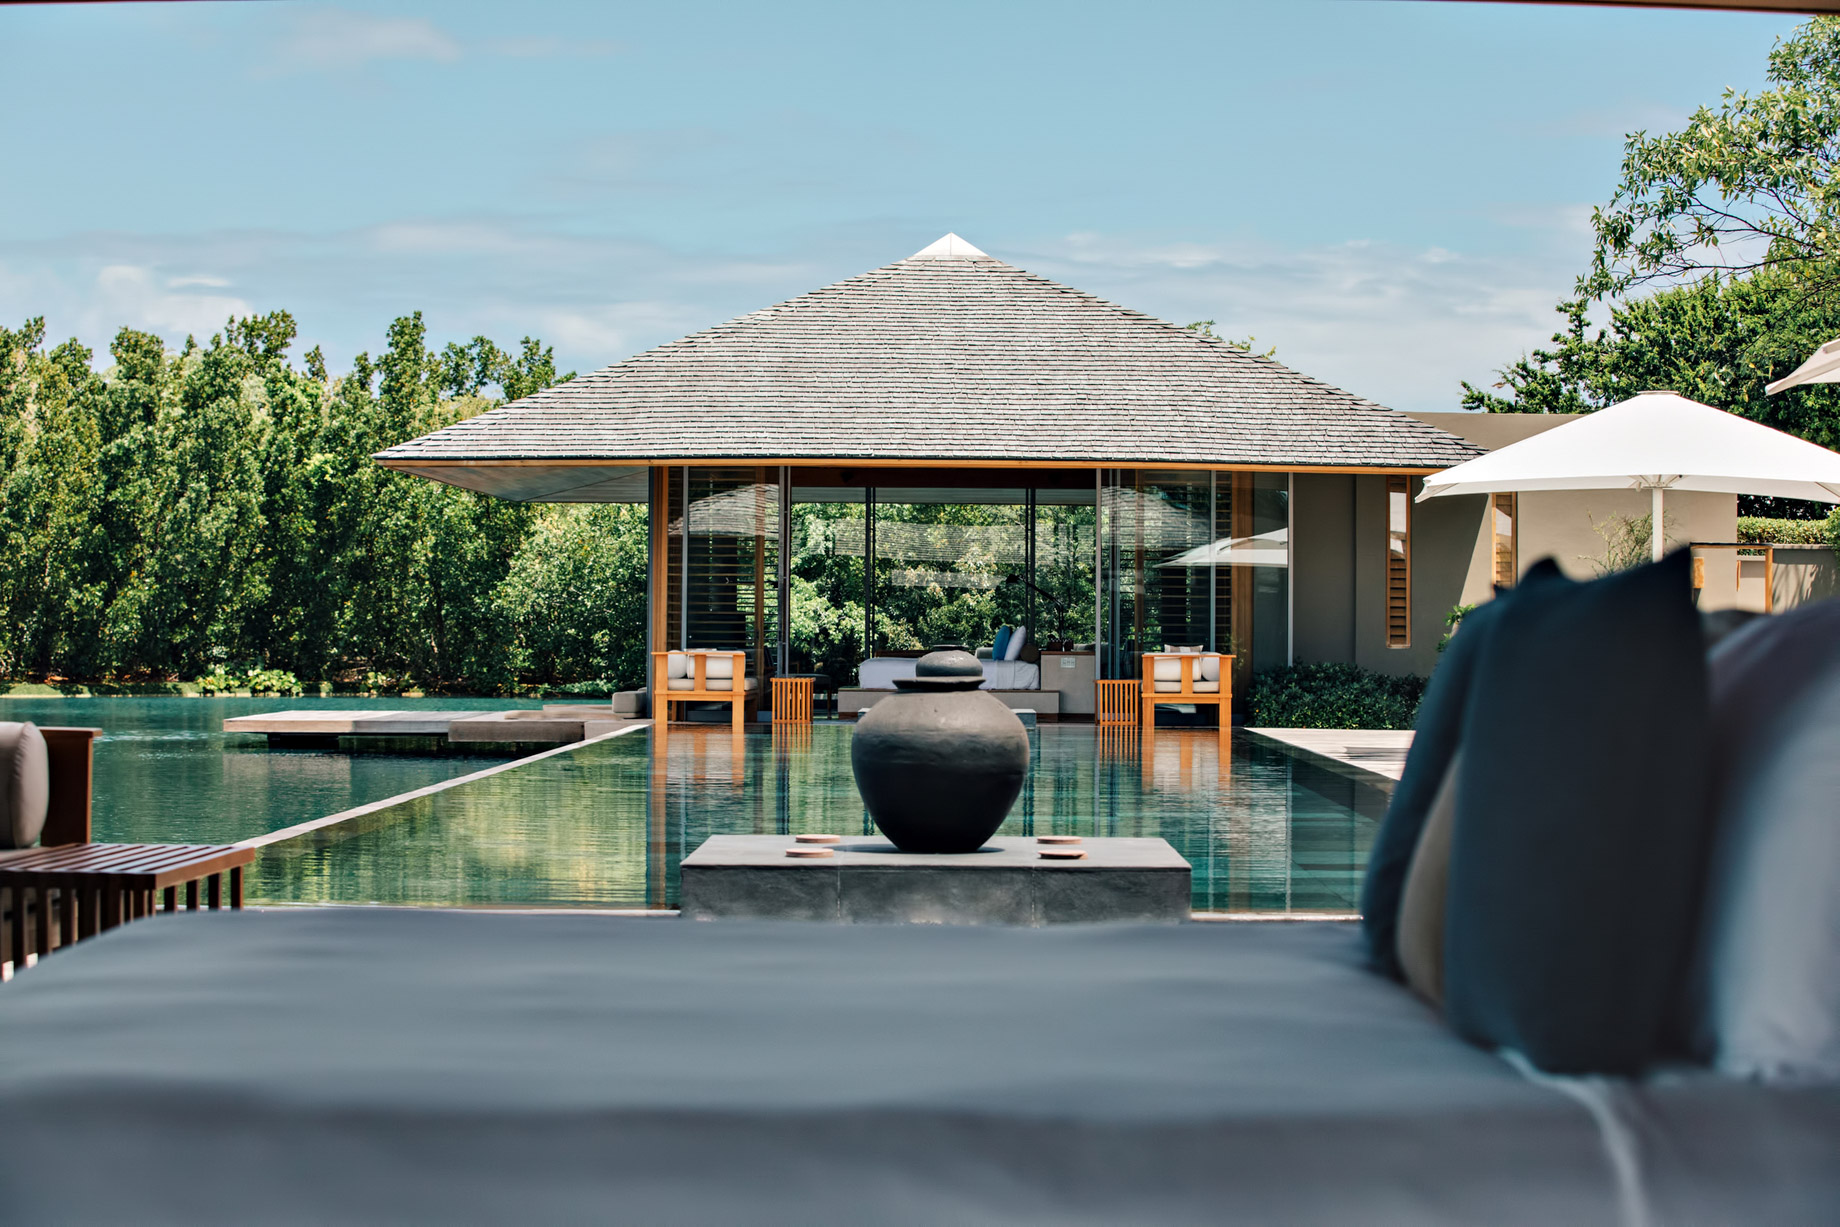 Amanyara Resort – Providenciales, Turks and Caicos Islands – Villa Exterior Pool Deck View